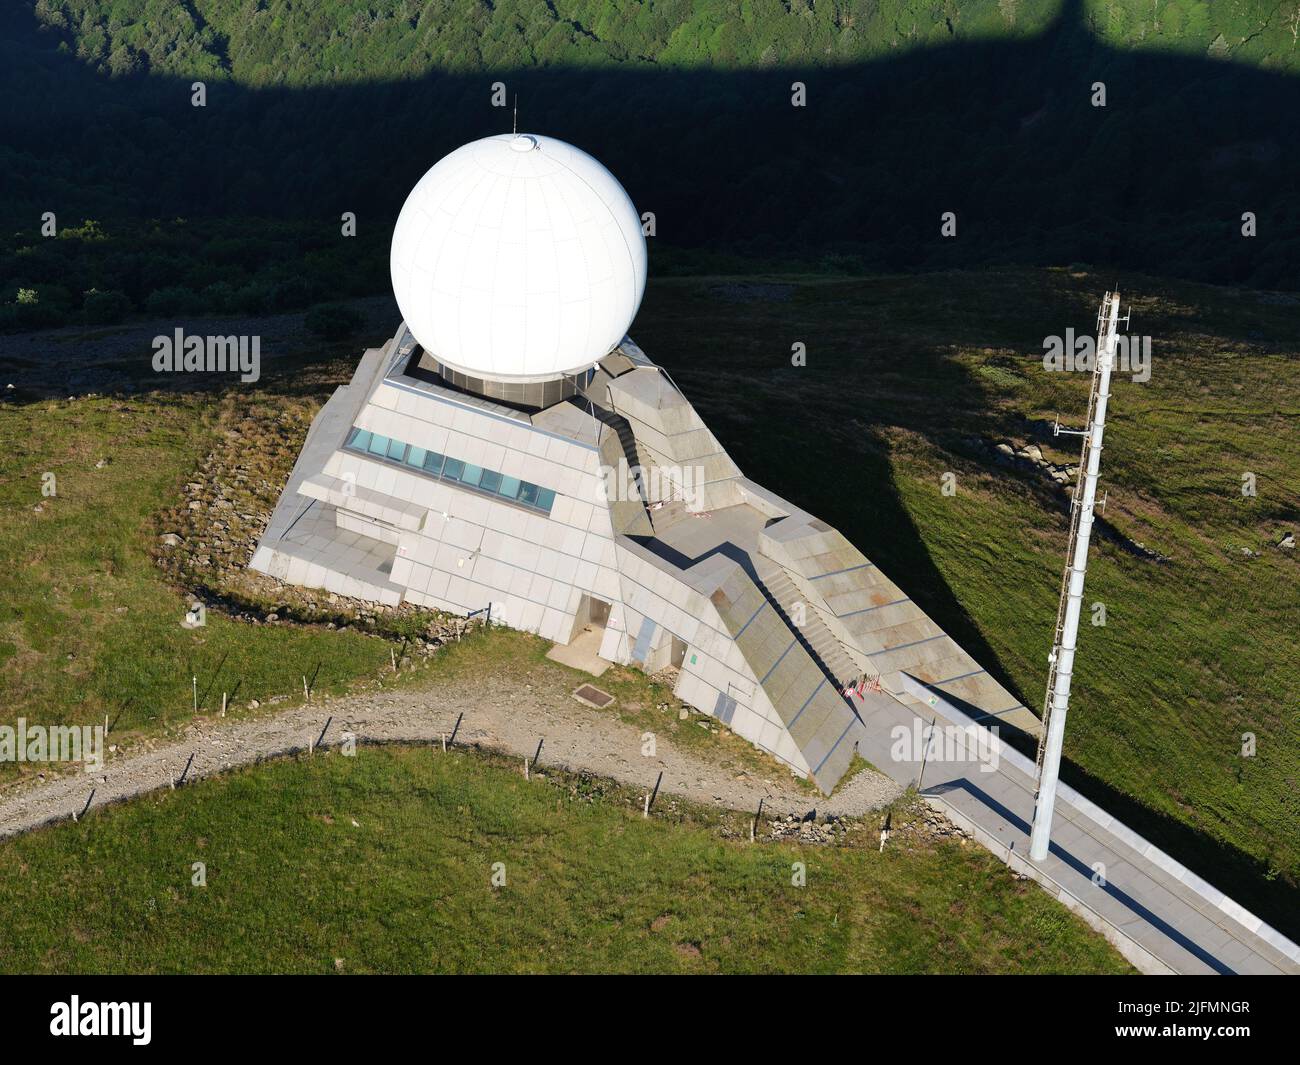 VUE AÉRIENNE. Radar d'aviation au Grand ballon, qui est le plus haut sommet (1423 mètres) du massif des Vosges. Haut-Rhin, Alsace, Grand est, France. Banque D'Images